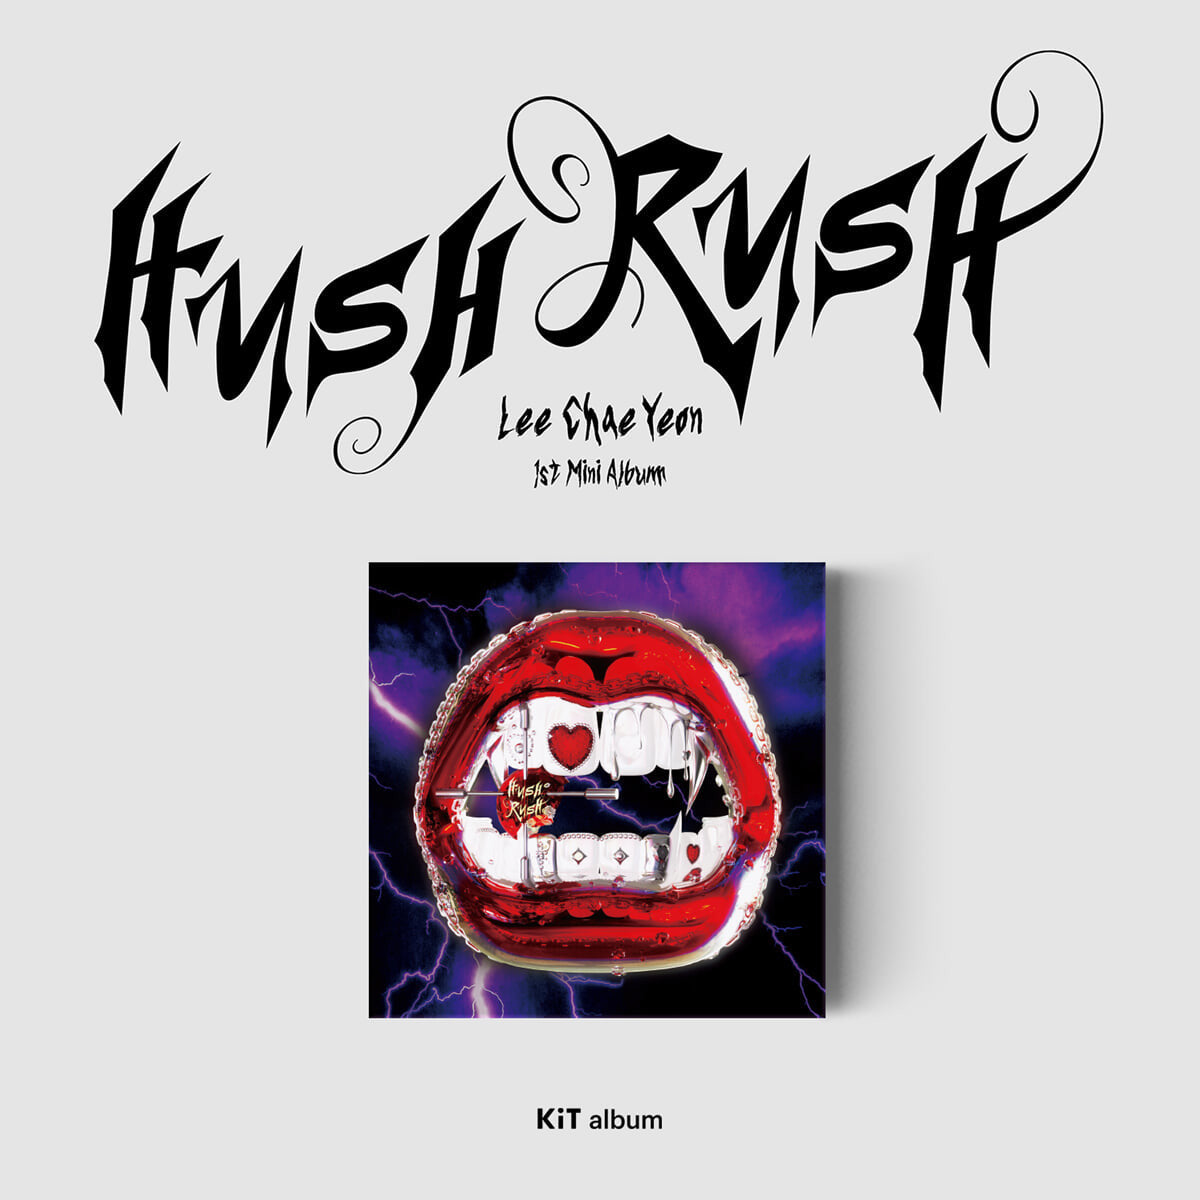 LEE CHAE YEON 1st Mini Album : HUSH RUSH (KiT Album)